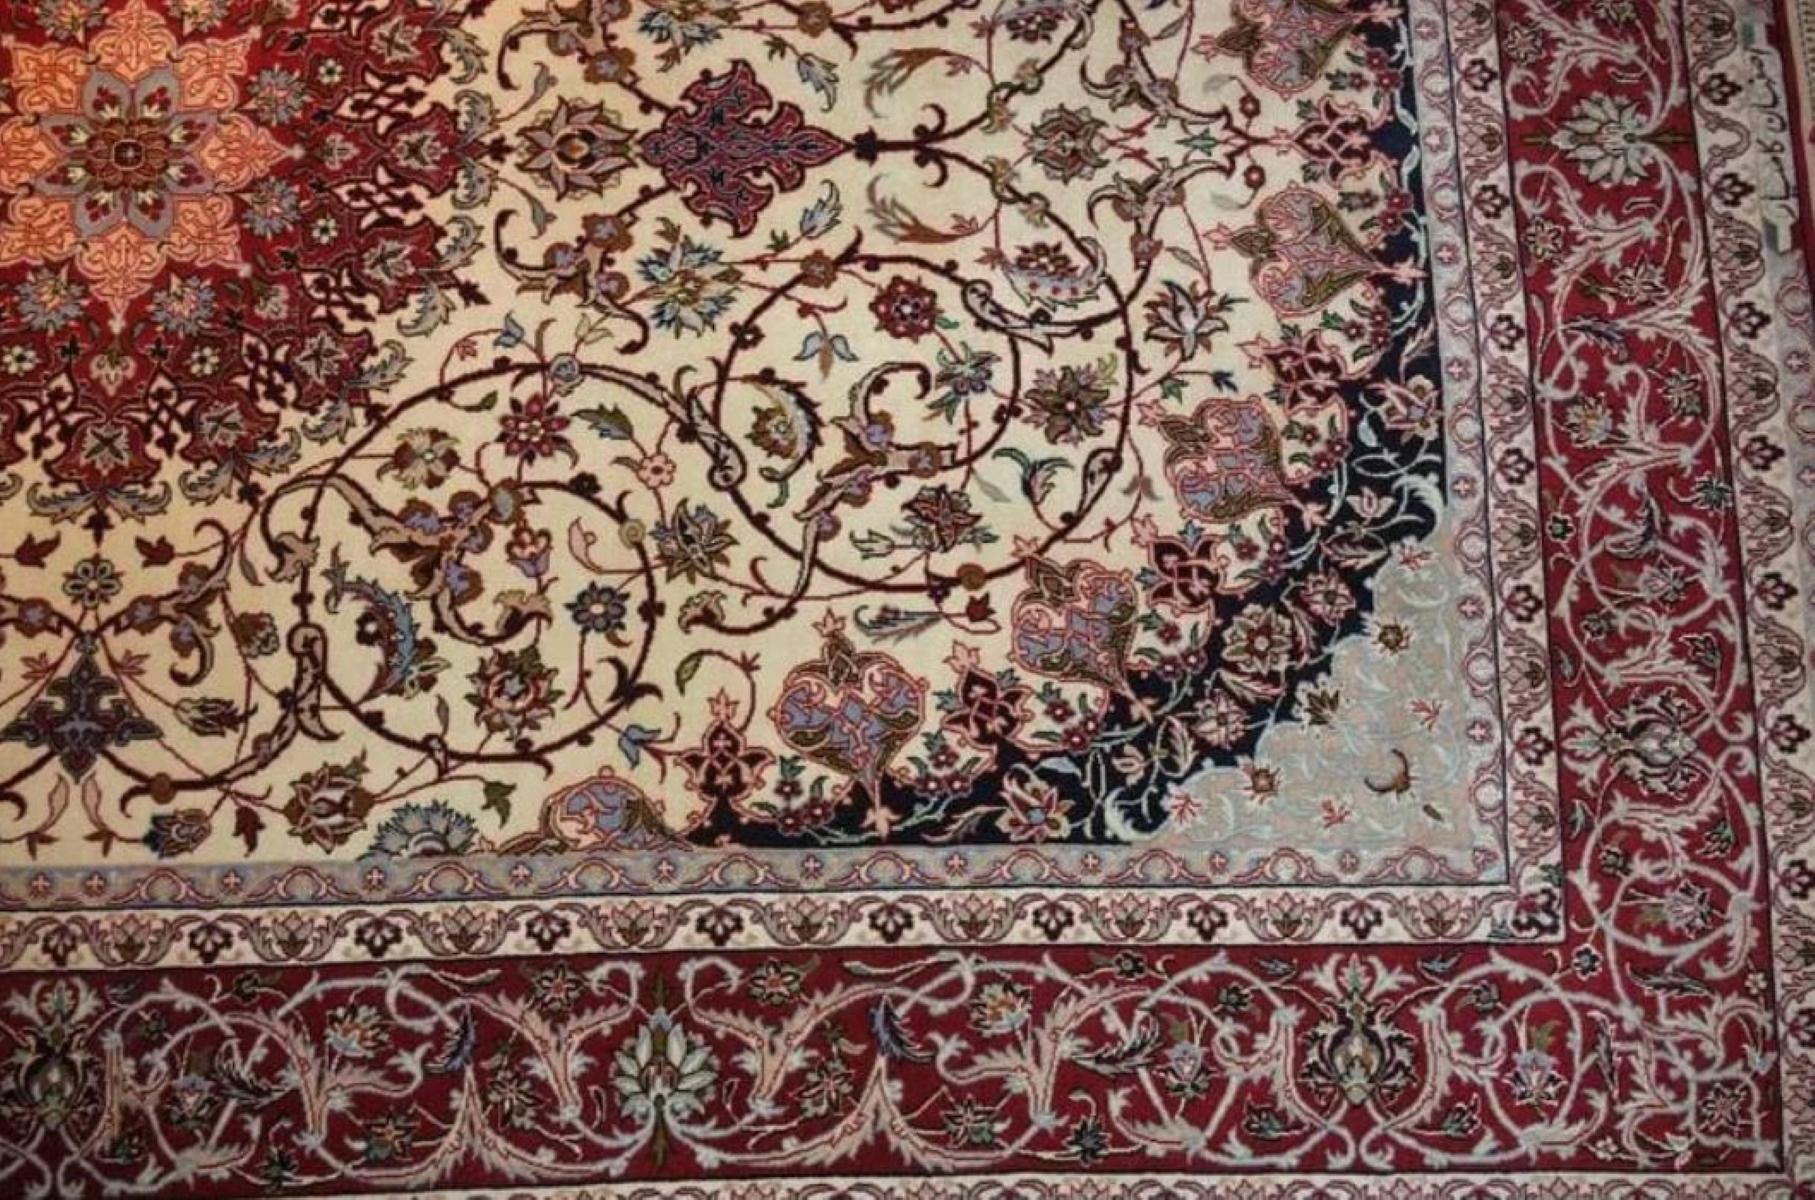 Très beau tapis persan Qum 600 noeuds par pouce, taille 7.8 x 5.2 Iran Isfahan Kamiar Soie et fondation soie. Environ 3 400 000 nœuds noués à la main, un par un. Il faut 3 ans pour réaliser cette œuvre d'art.